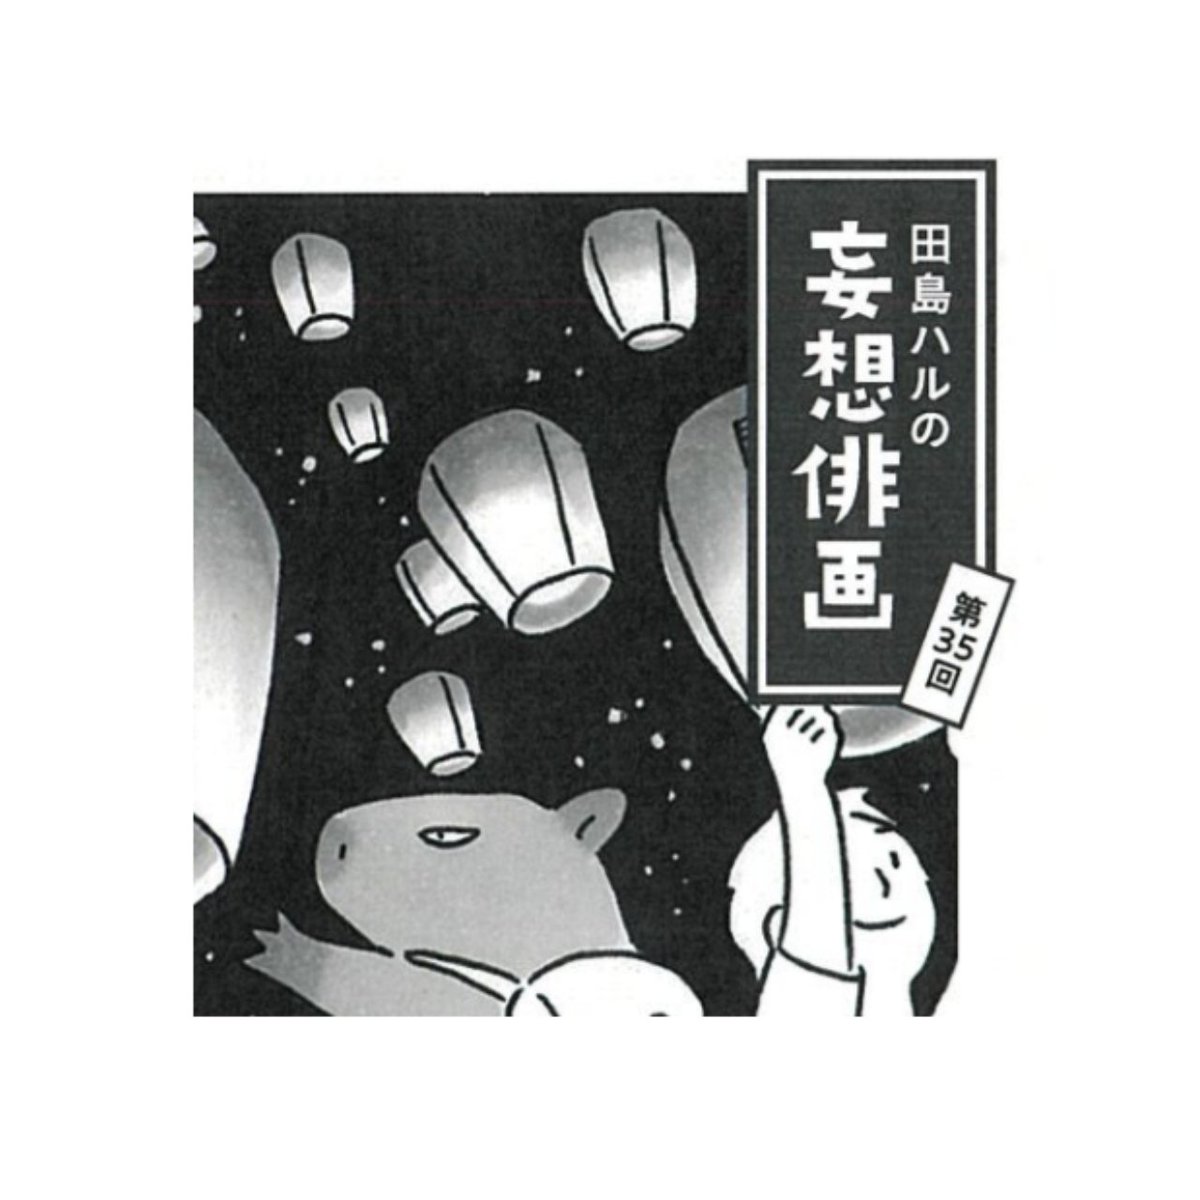 角川「俳句」6月号発売中。#田島ハルの妄想俳画 第35回目載ってます。今回は髙田正子さまの句から俳画とエッセイを書きました。俳人スポットライトでは土井探花さんの句が掲載されてますよ。 #俳句 #俳画